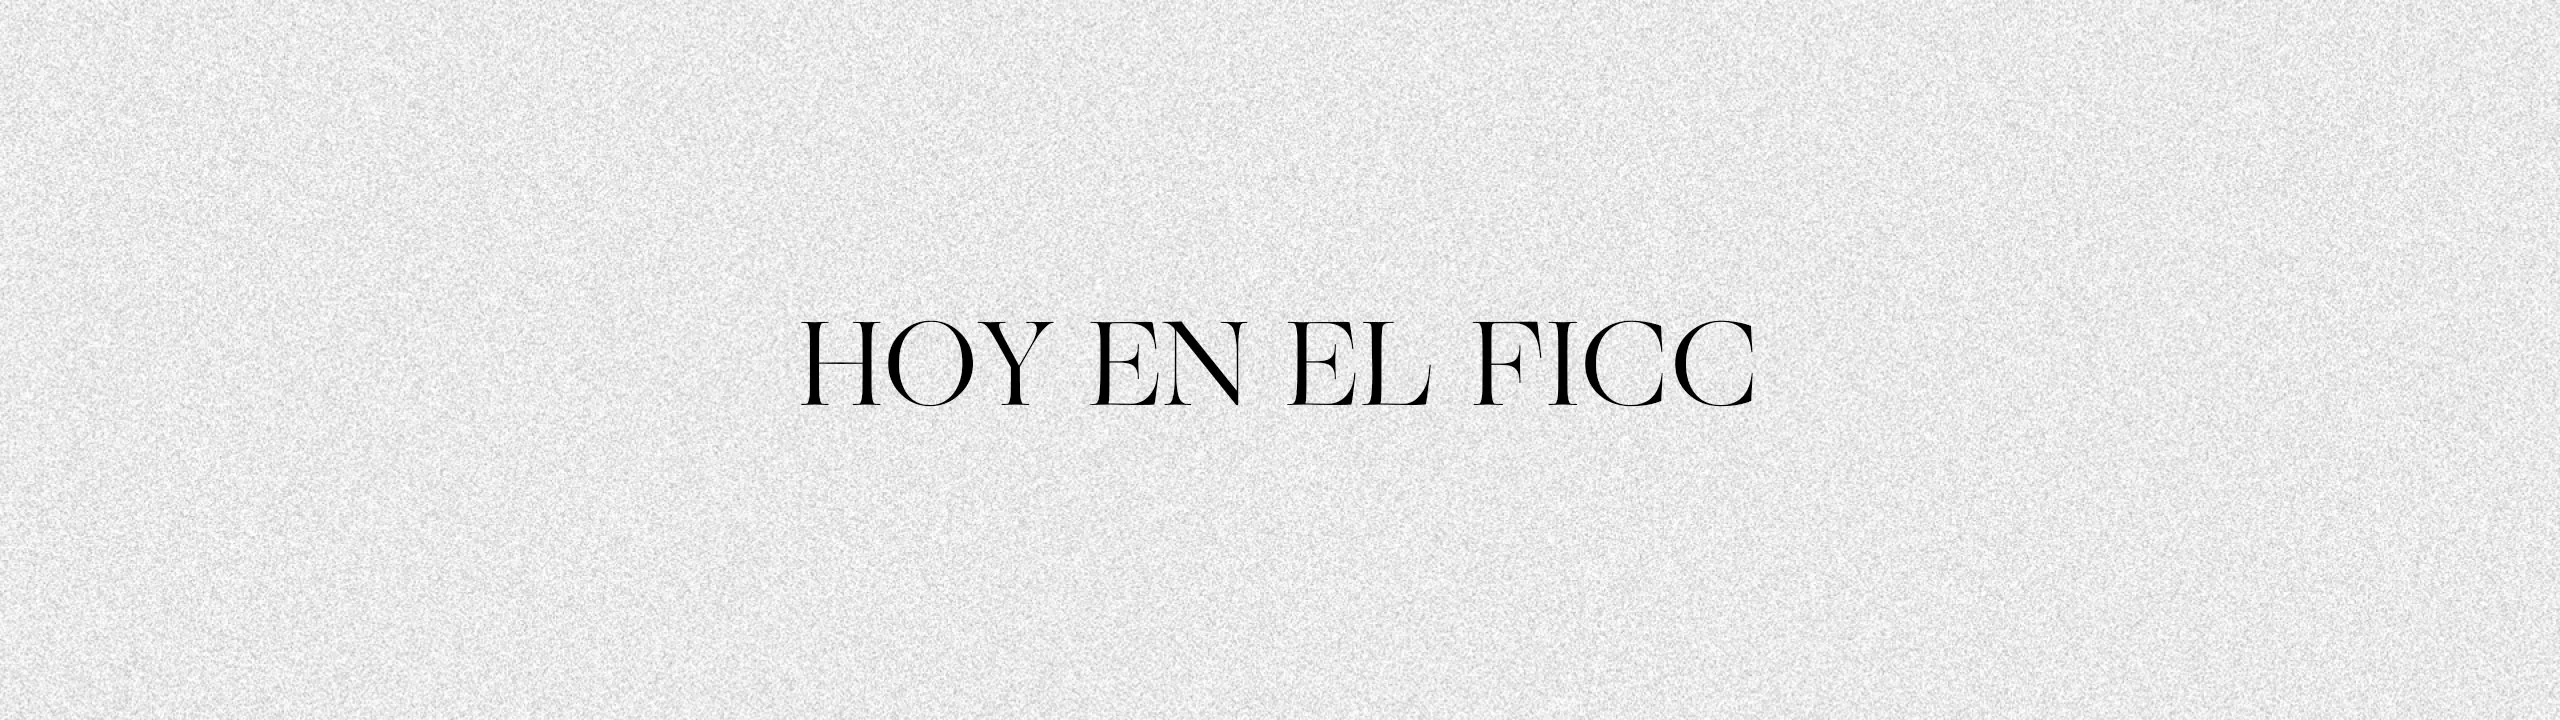 HOY EN EL FICC